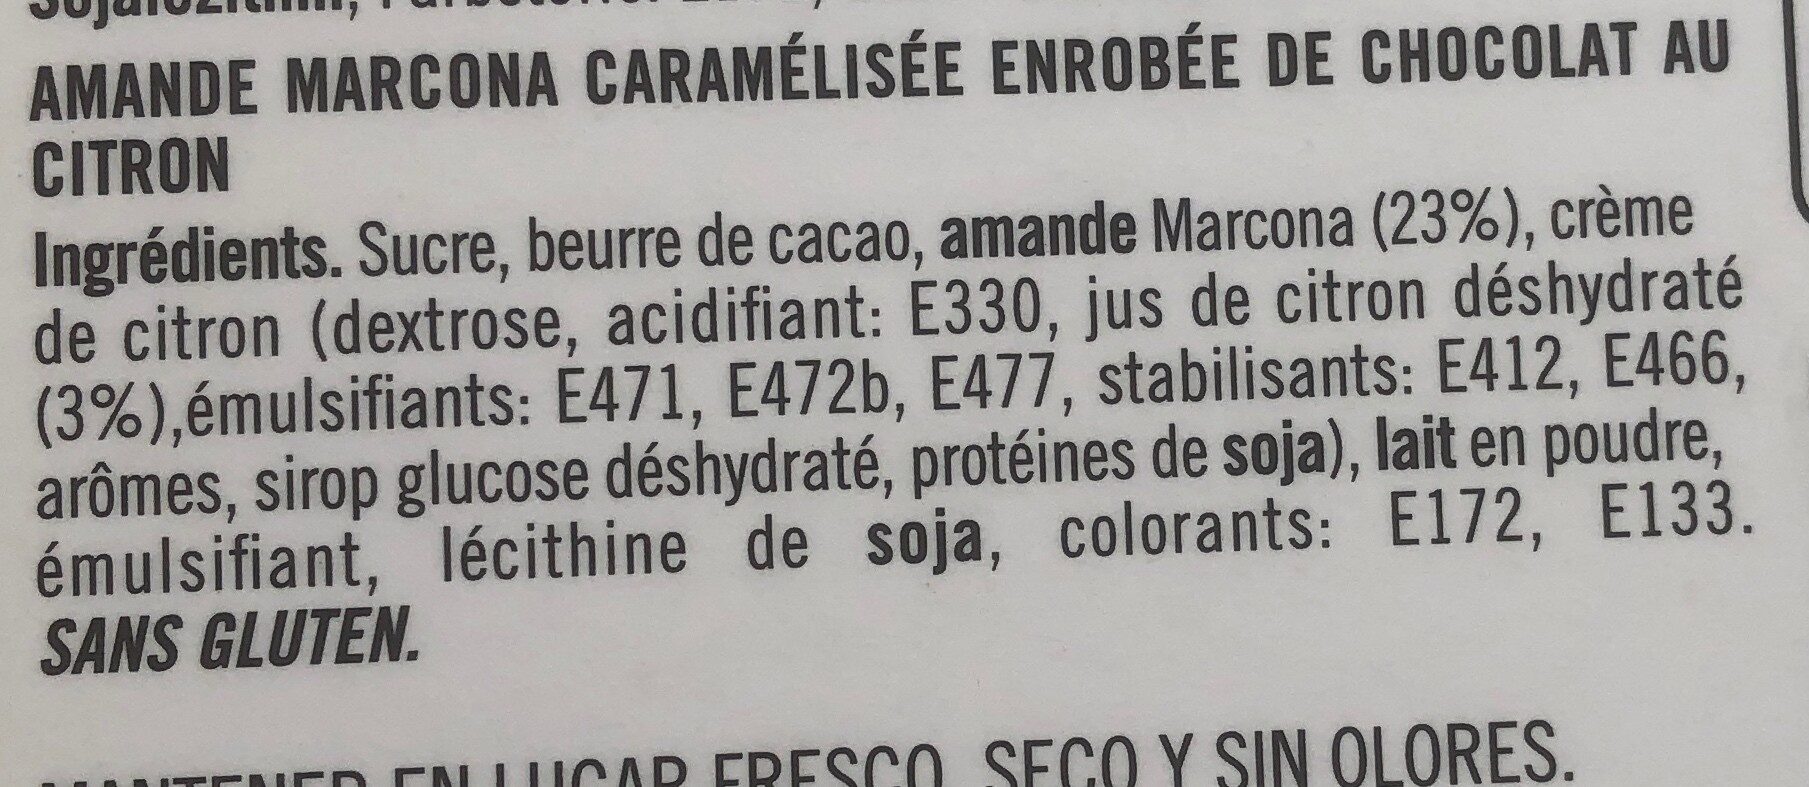 Catanies green lemon - Ingredients - fr